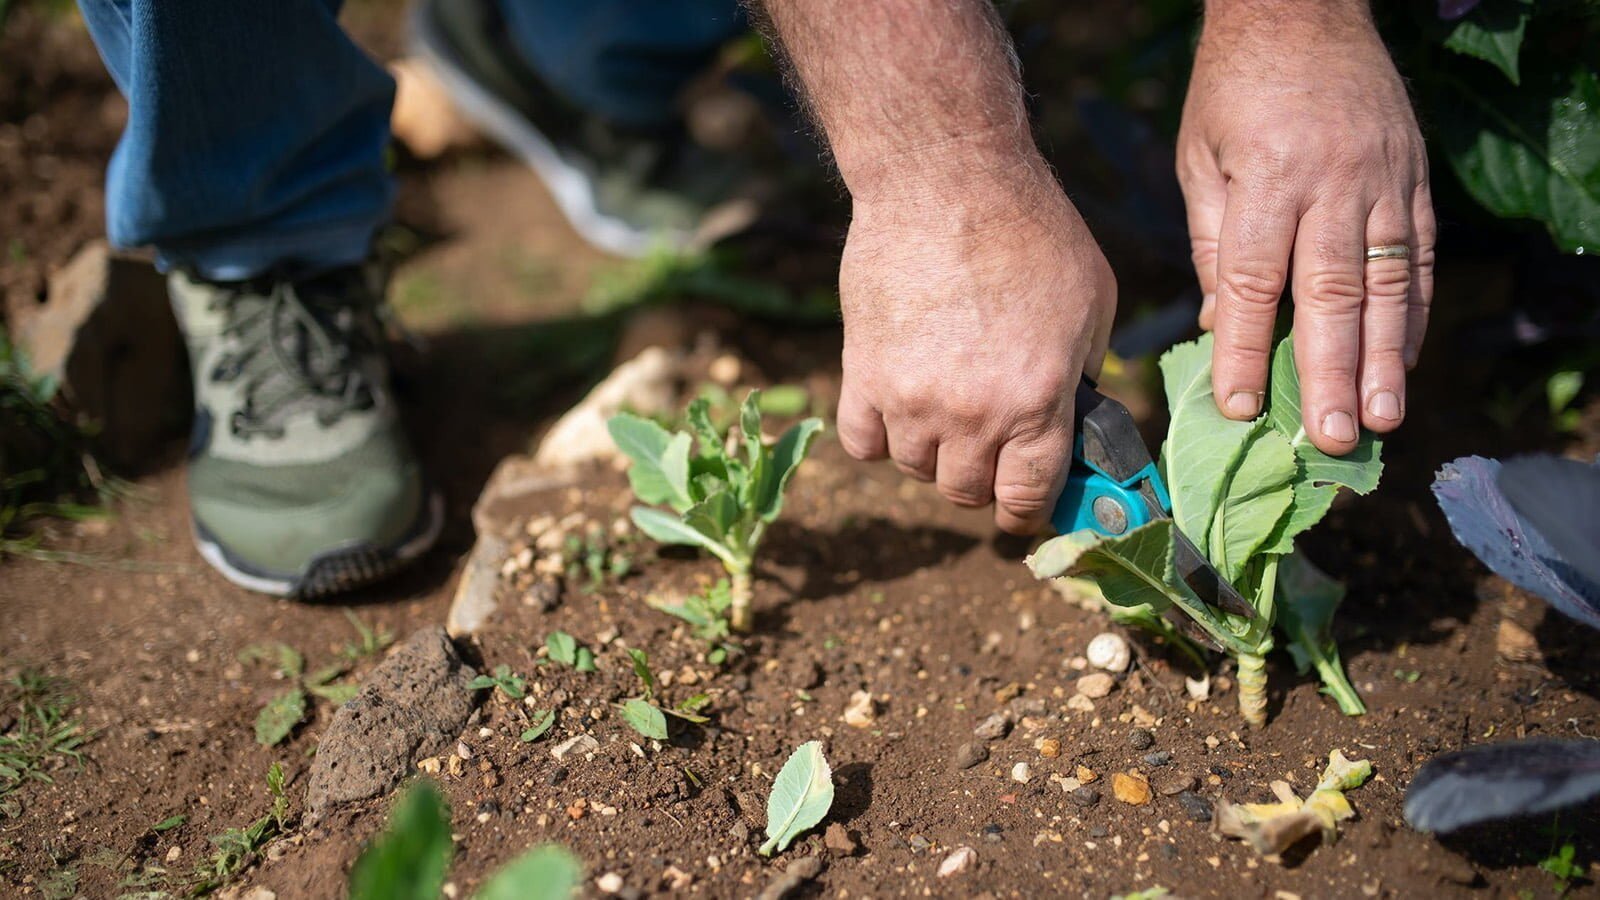 L’Amministrazione Comunale di Farra di Soligo ha organizzato, con inizio lunedì 28 marzo prossimo, il 2° corso di orticoltura “Come coltivare l’orto: dalla semina al raccolto”